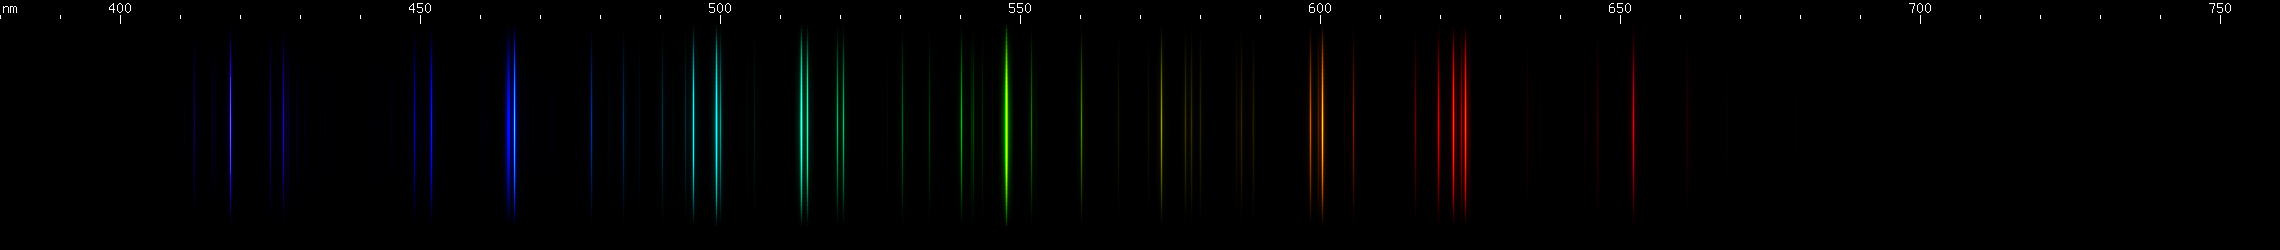 Spectral lines of Lutetium.